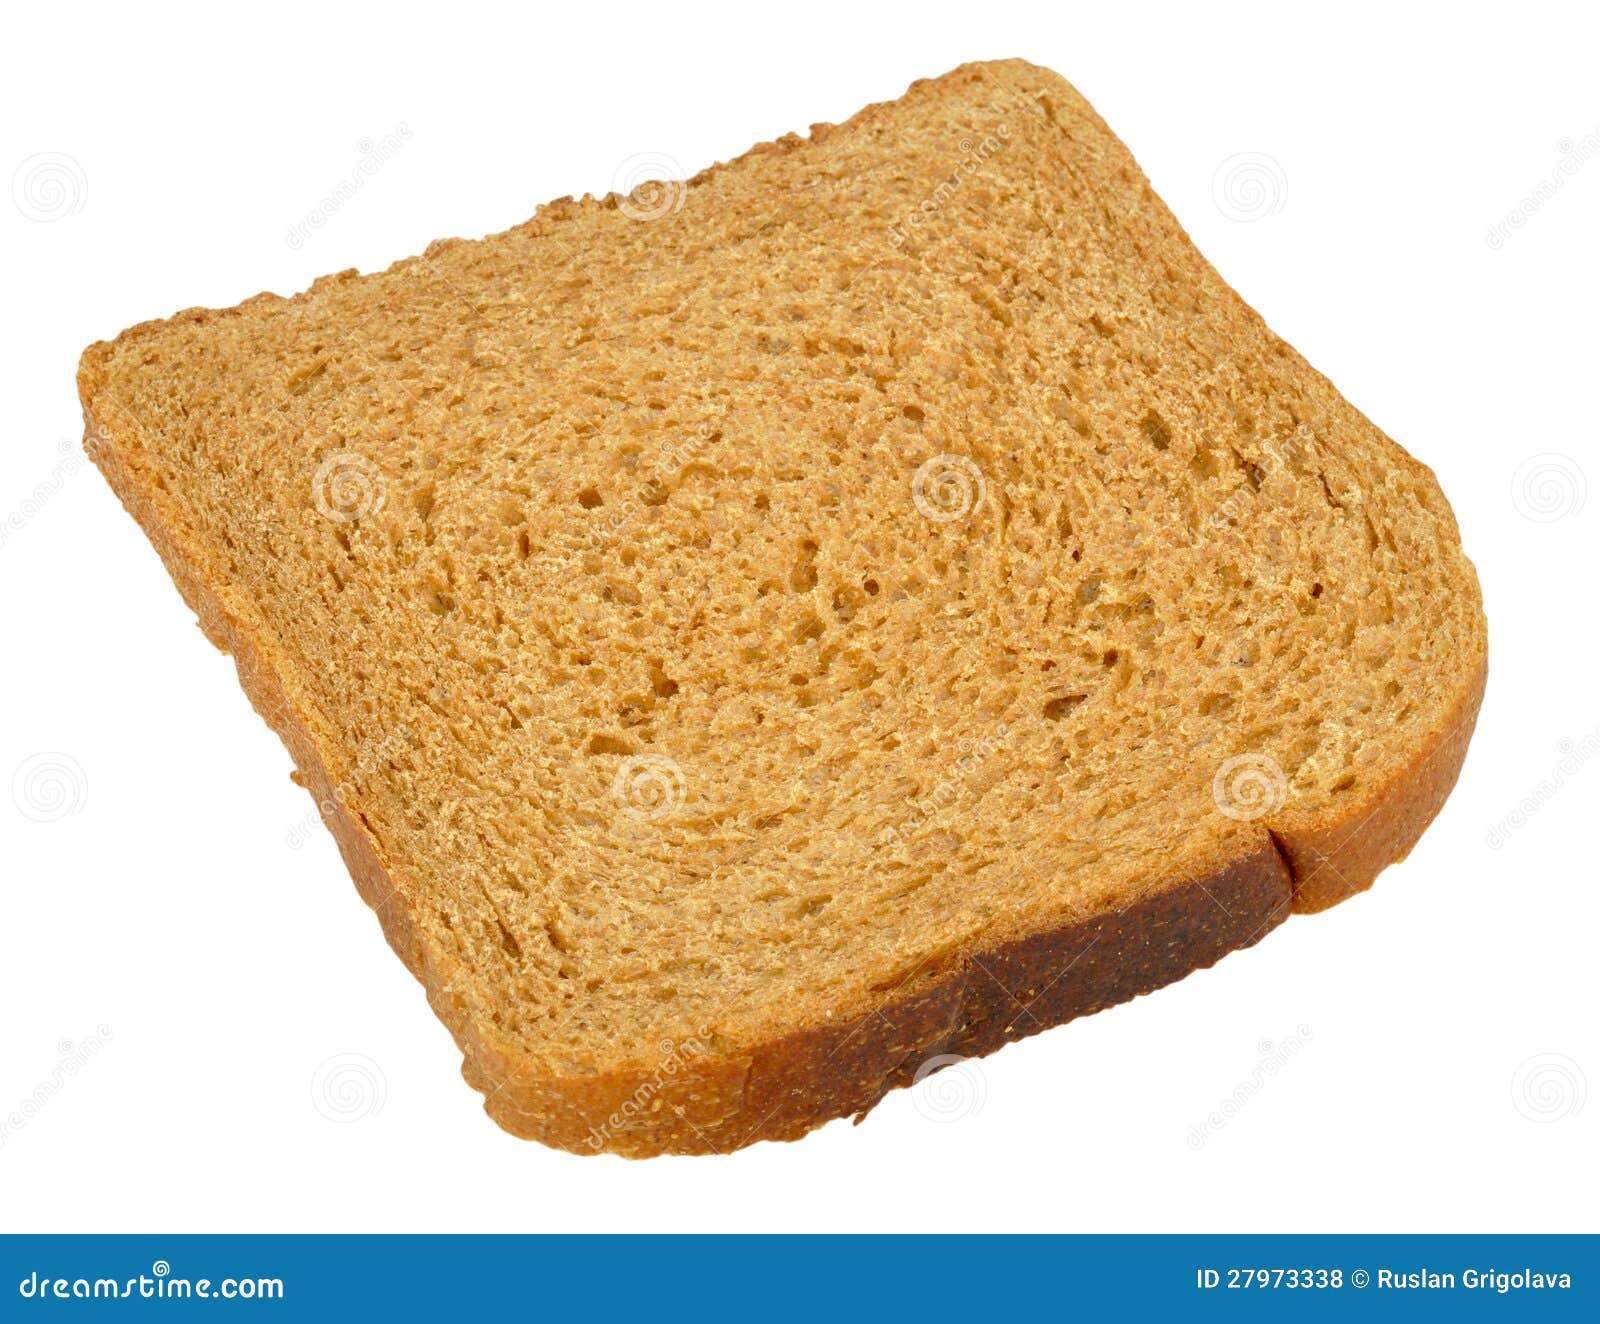 Кусок тостового хлеба. Хлеб тостовый ржаной. Хлеб тостовый ржаной кусок. Хлеб Paneteria тостовый пшеничный. Тостовый хлеб на прозрачном фоне.